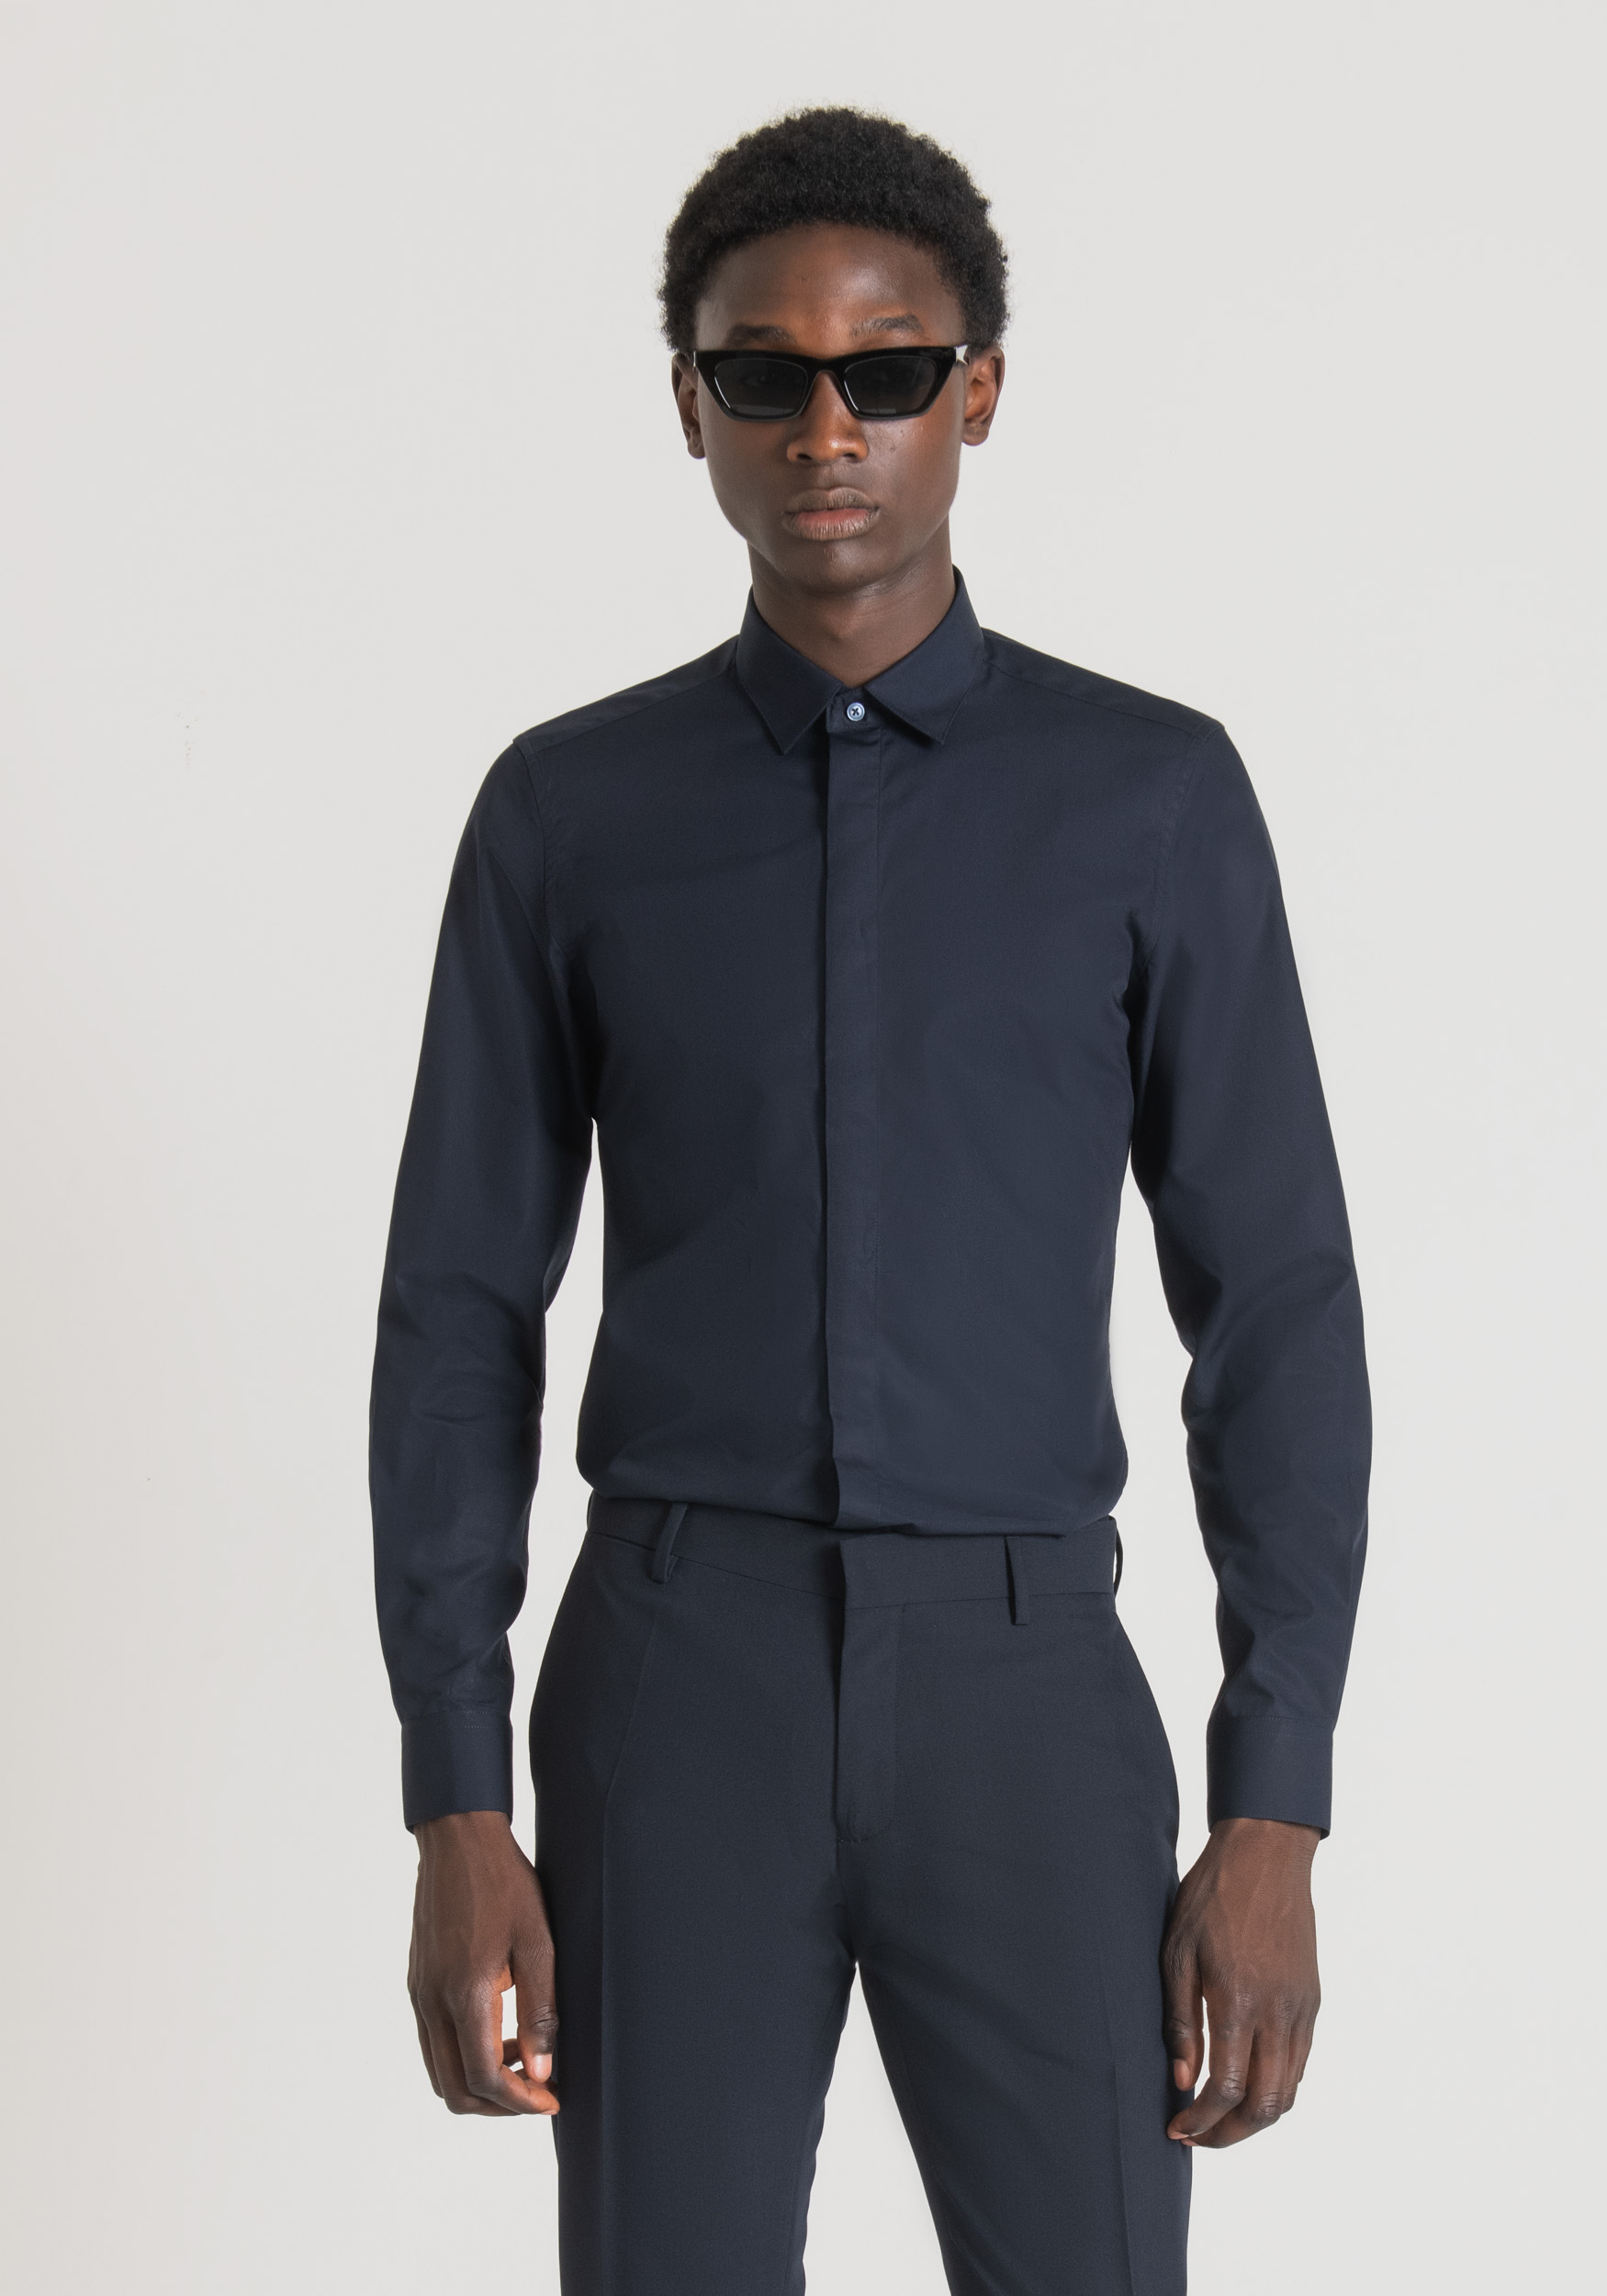 Antony Morato Chemise Slim Fit 'London' En Coton, Facile A Repasser, Avec Patte De Boutonnage Dissimulee Encre Bleu | Homme Chemises